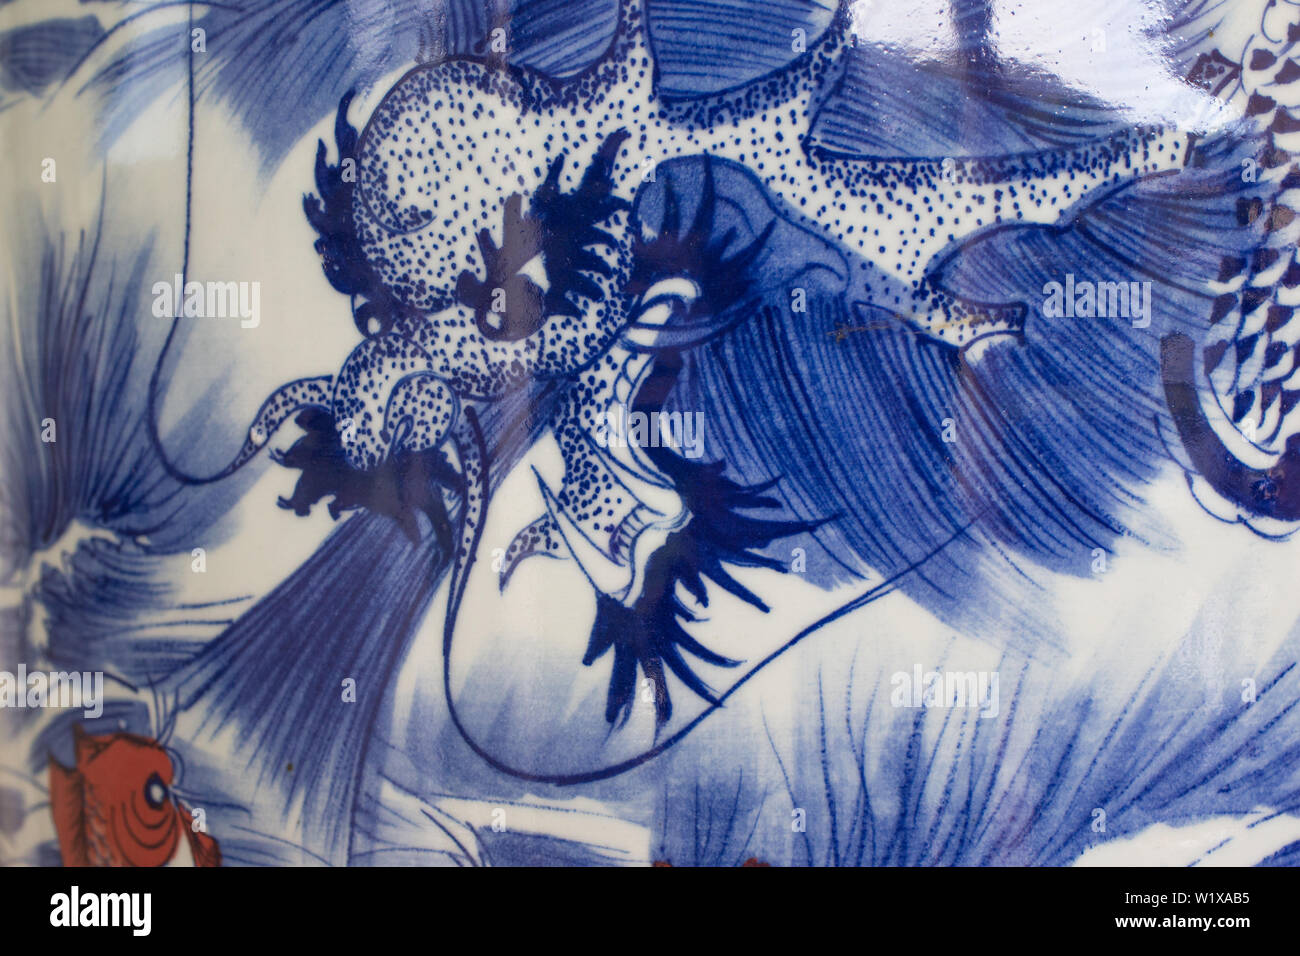 China o asiática artística representación de azul y blanco y un dragón koi fish en un satinado o brillante superficie cerámica de una urna o jarrón cerrar Foto de stock